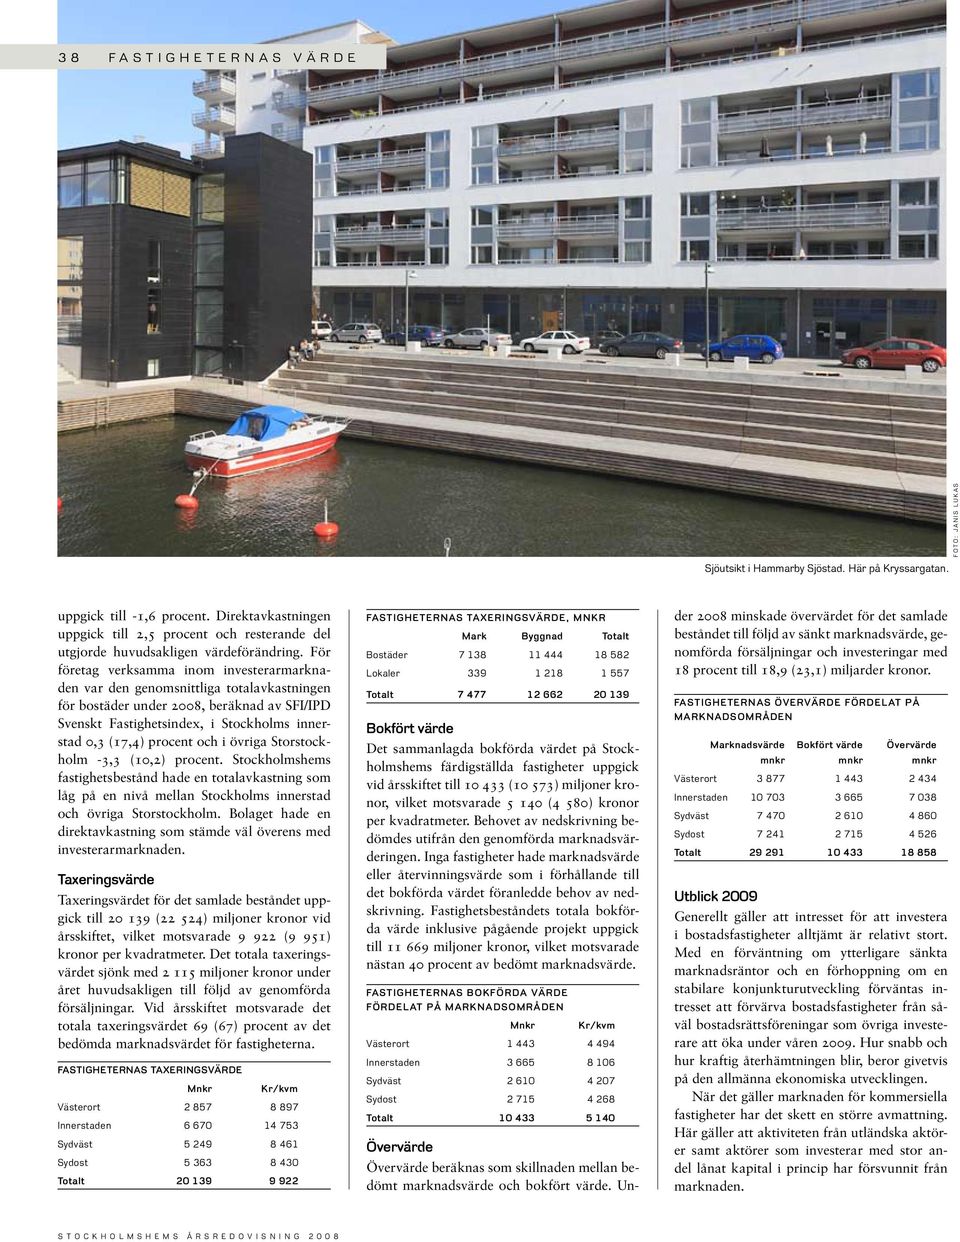 För företag verksamma inom investerarmarknaden var den genomsnittliga totalavkastningen för bostäder under 28, beräknad av SFI/IPD Svenskt Fastighetsindex, i Stockholms innerstad,3 (17,4) procent och